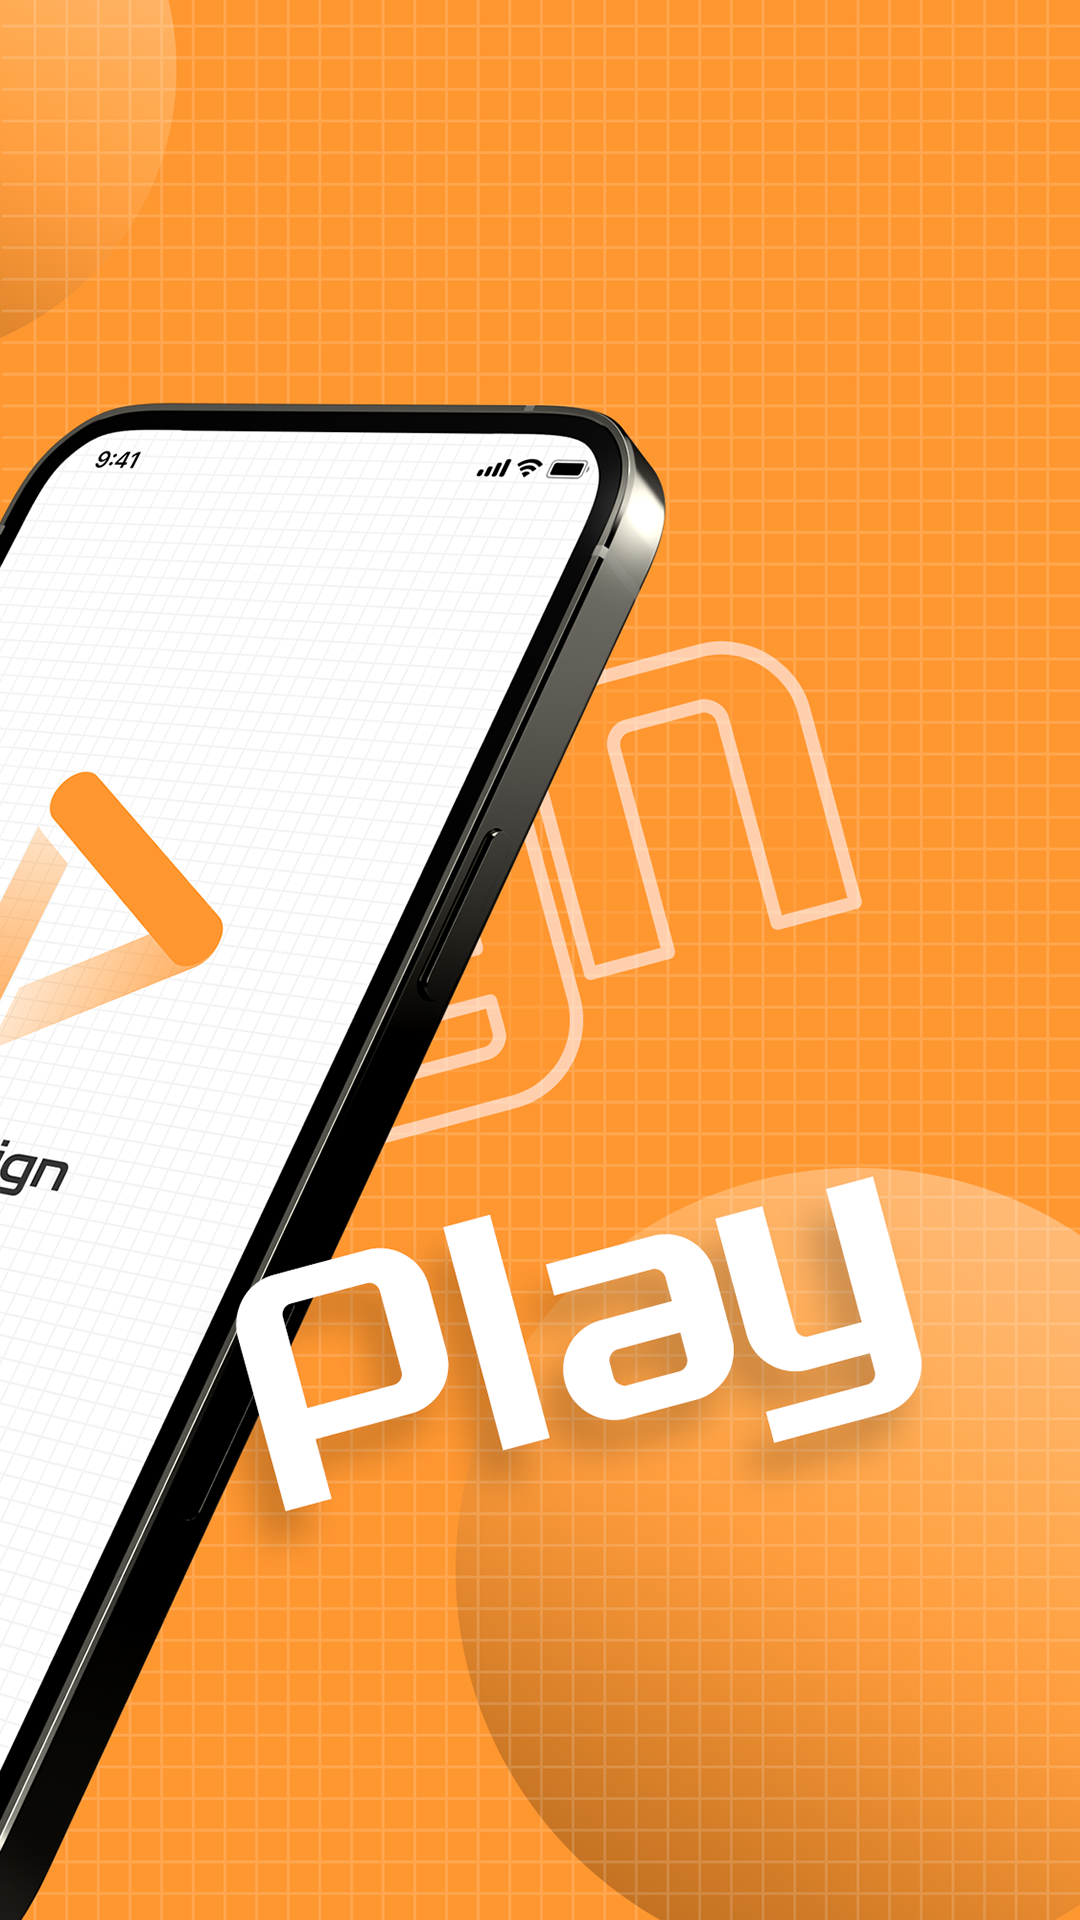 Design Play设计稿预览app最新版v1.2.0 官方版